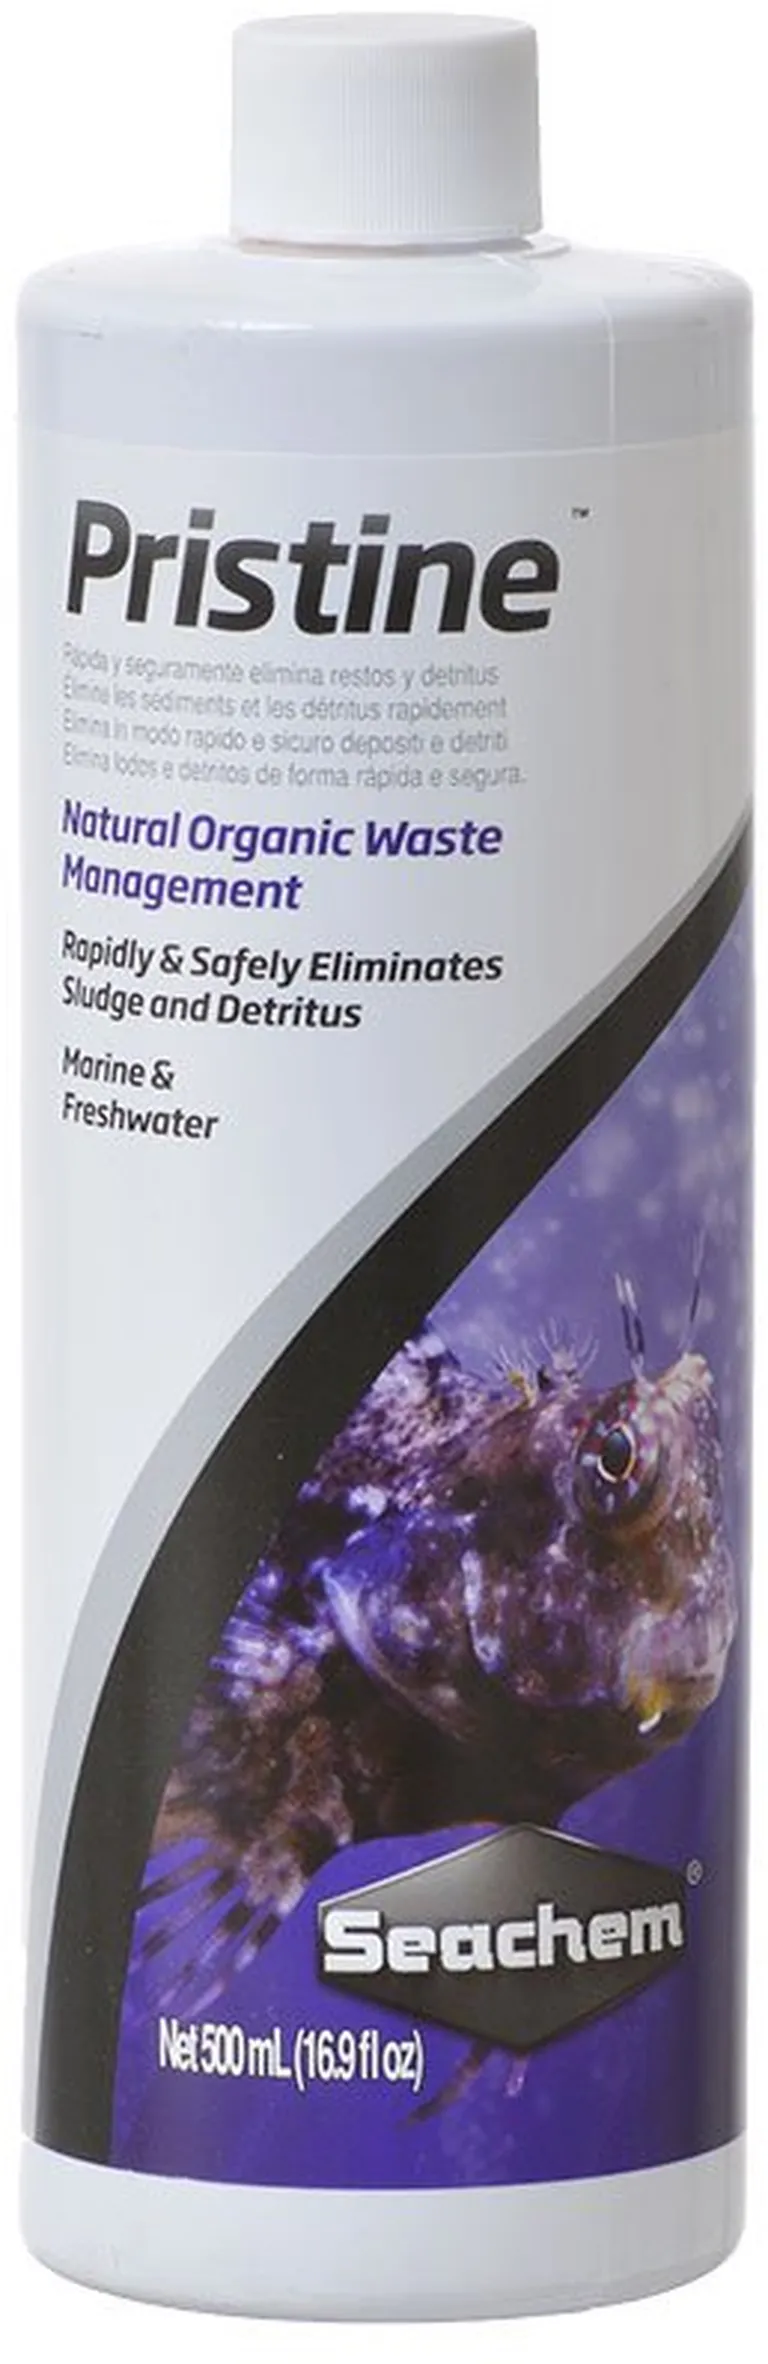 Seachem Pristine Natural Organic Waste Managment Eliminates Sludge and Detritus in Aquariums Photo 1